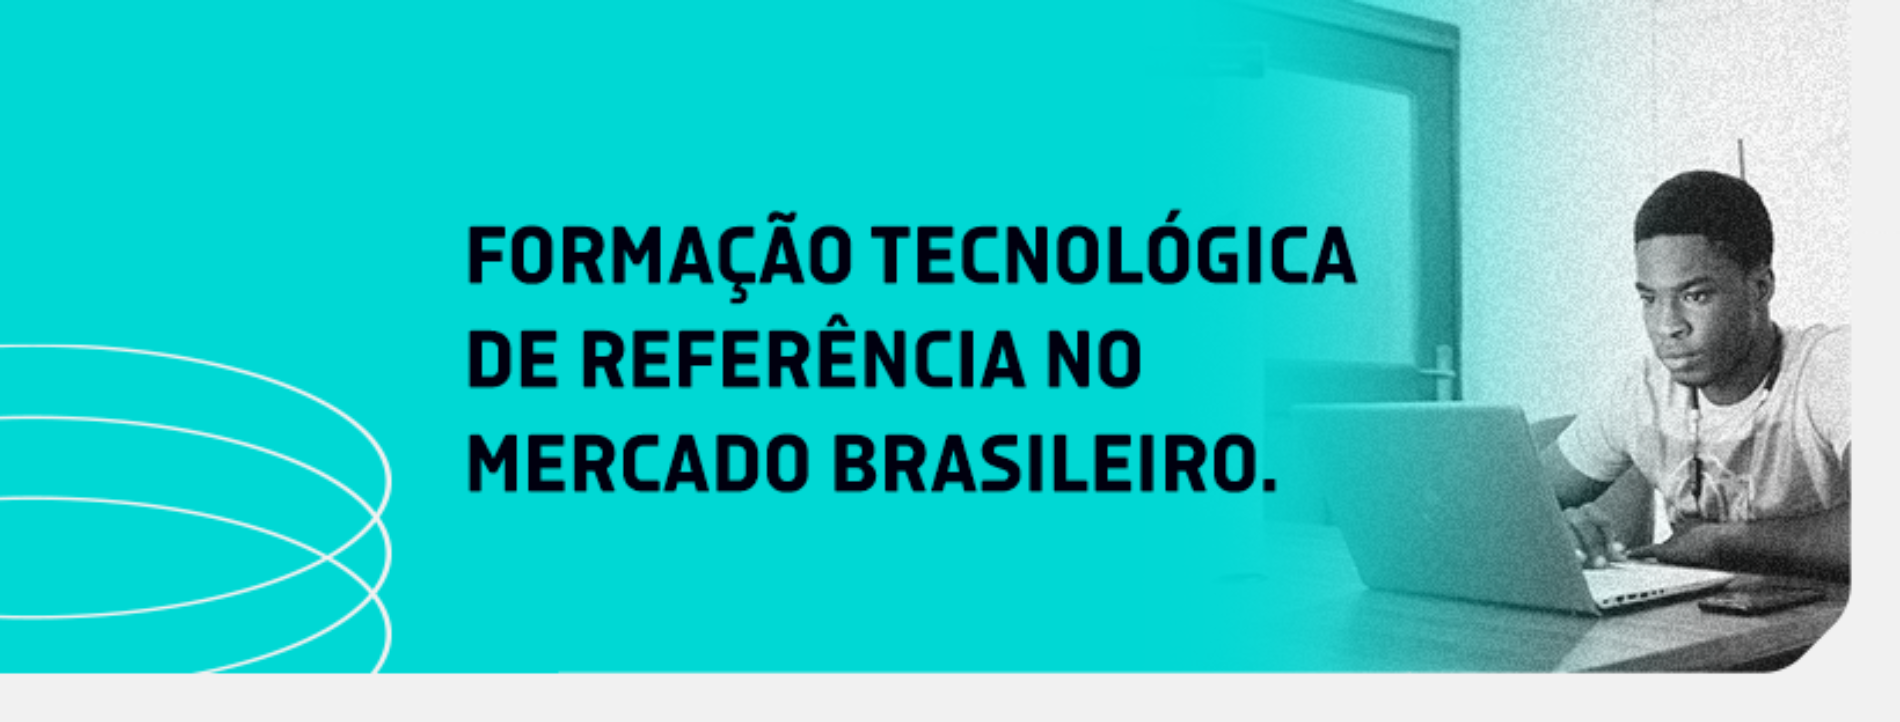 4Linux: Formação Tecnológica Referência no Mercado Brasileiro